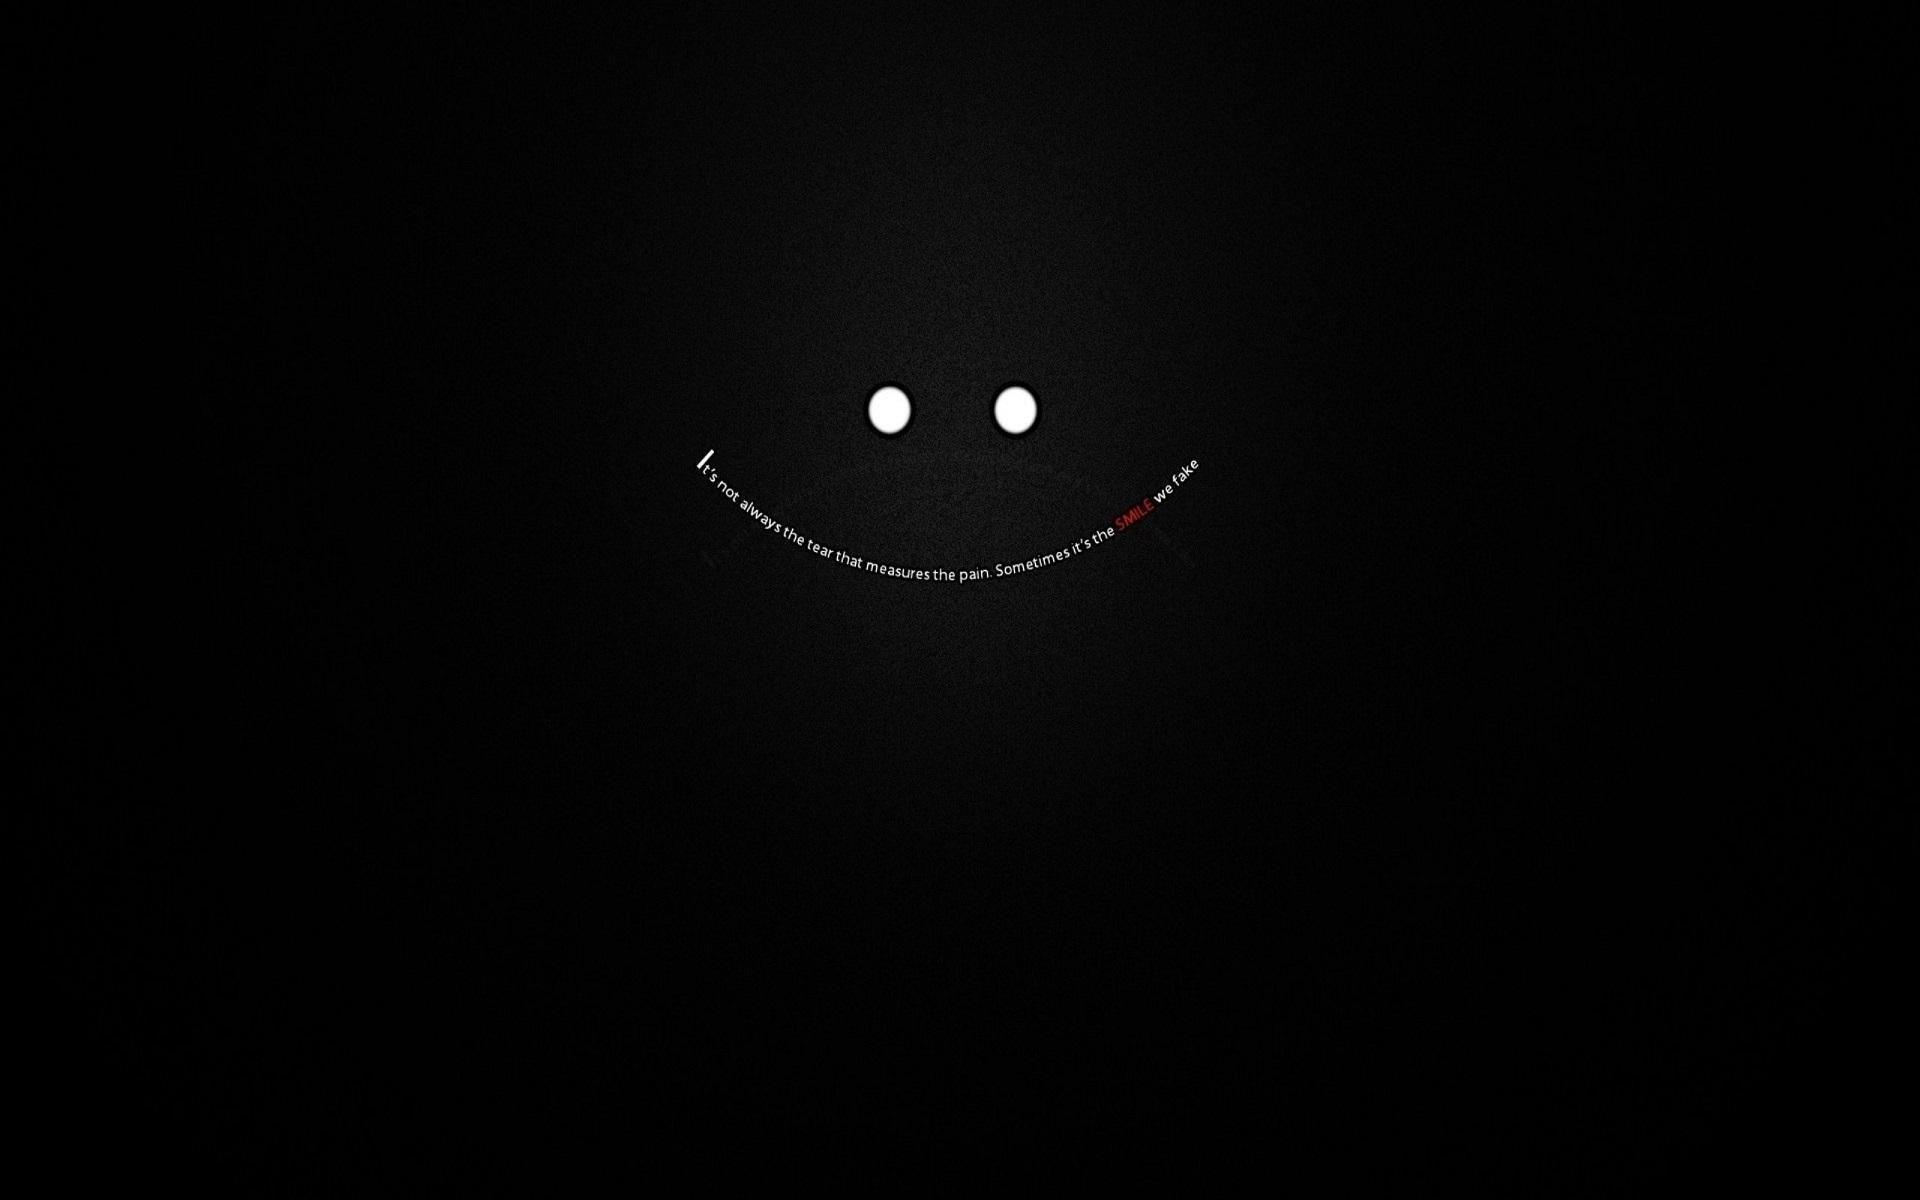 Dark Smile Wallpapers - Top Những Hình Ảnh Đẹp